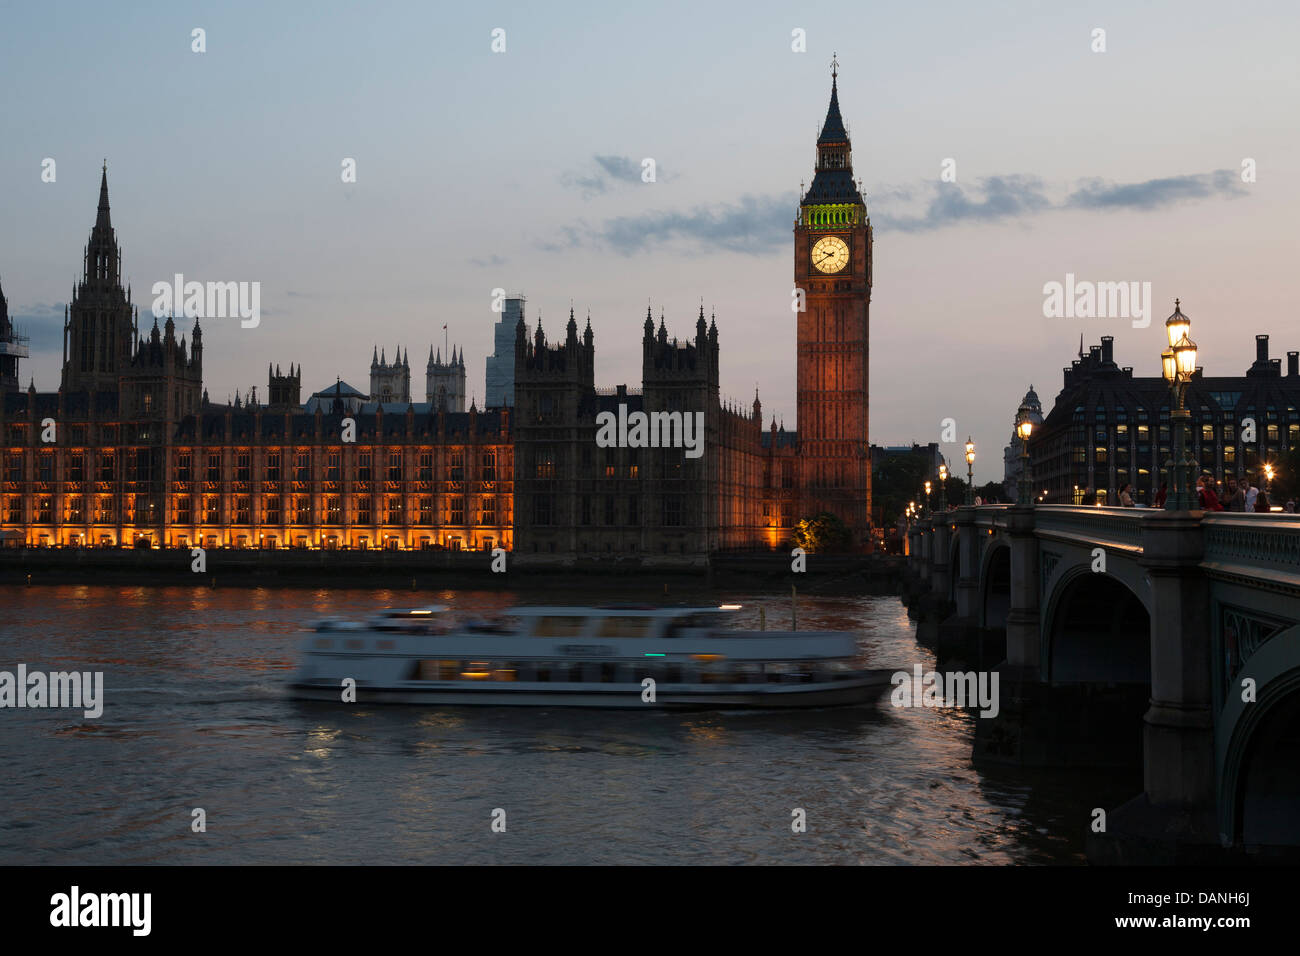 Palacio de Westminster, las Casas del Parlamento, Elisabeth Torre, Big Ben, London, UK Foto de stock